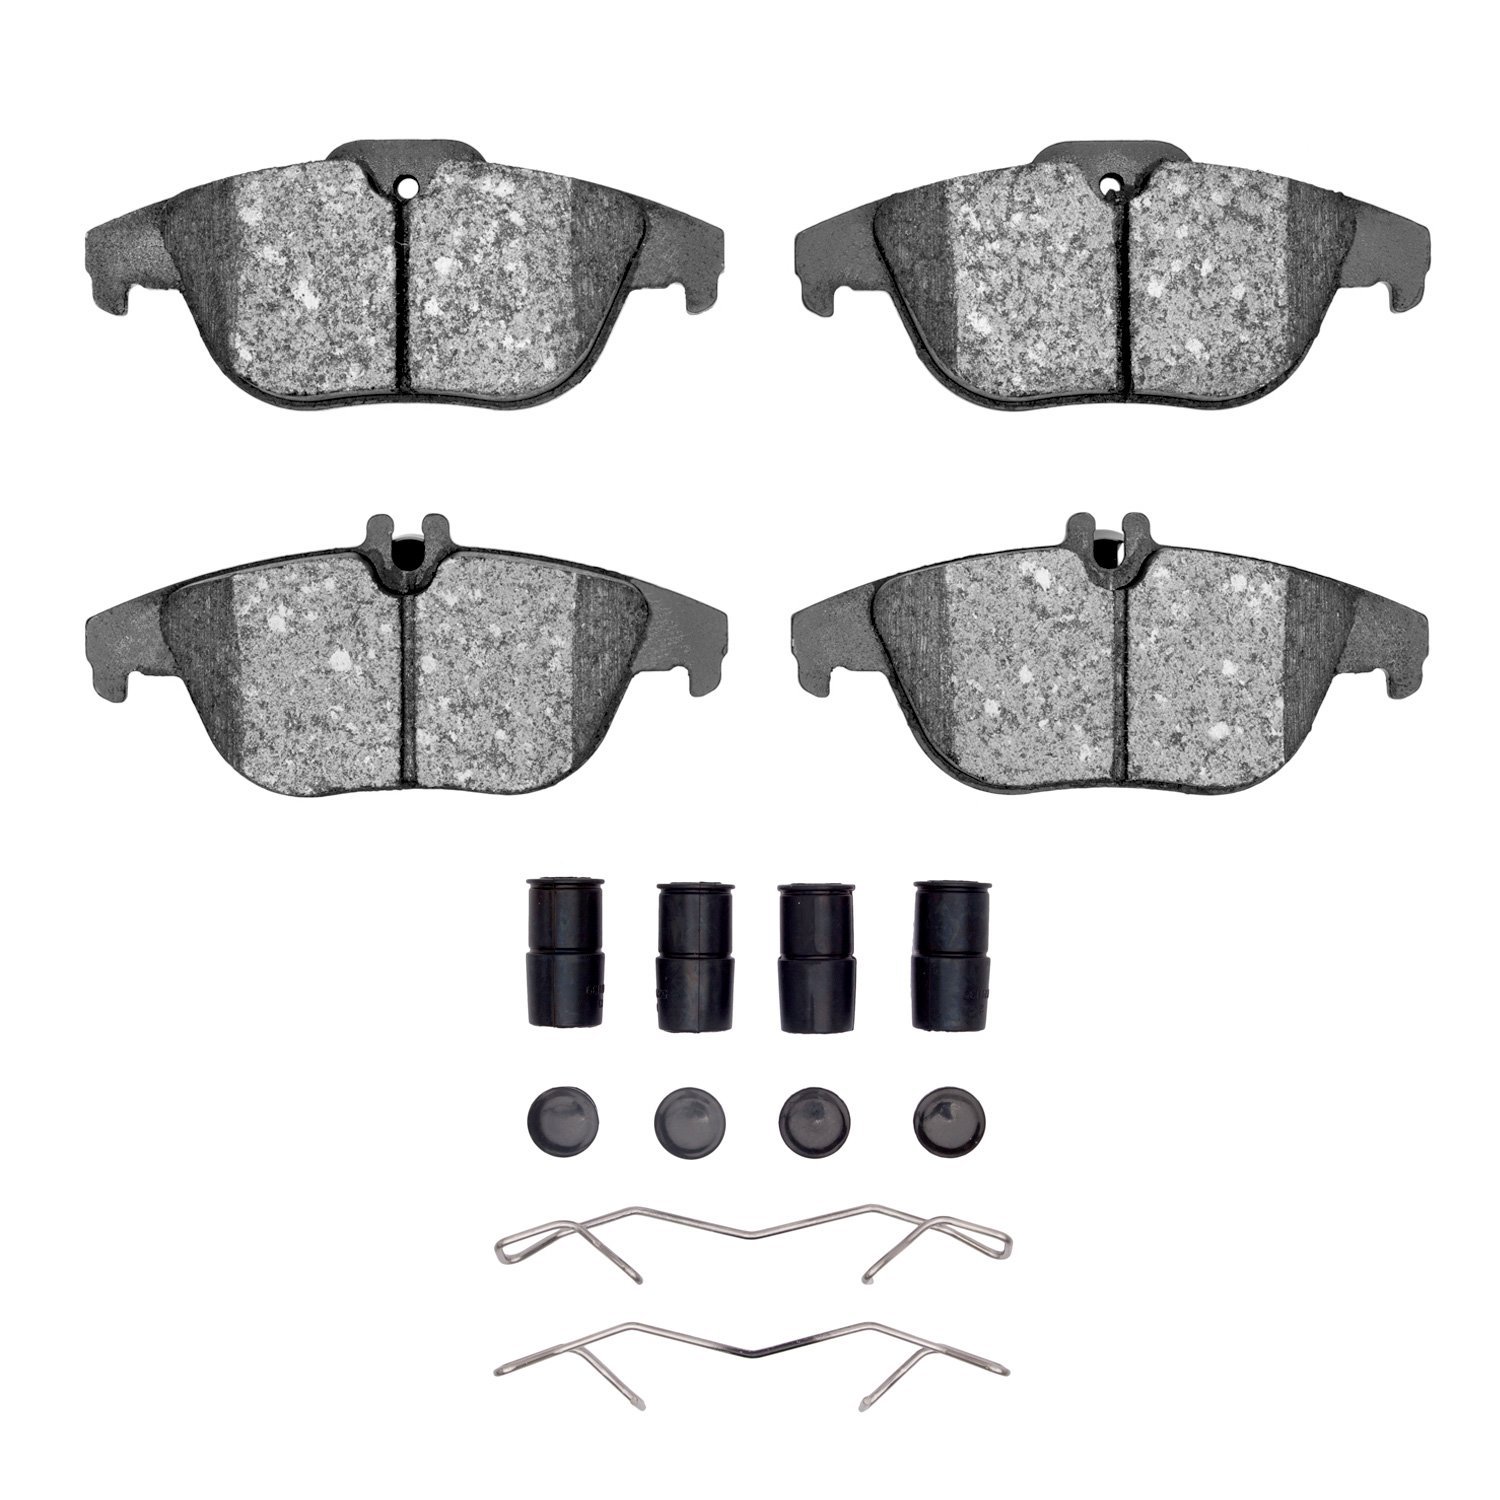 1600-1341-01 5000 Euro Ceramic Brake Pads & Hardware Kit, 2008-2017 Mercedes-Benz, Position: Rear